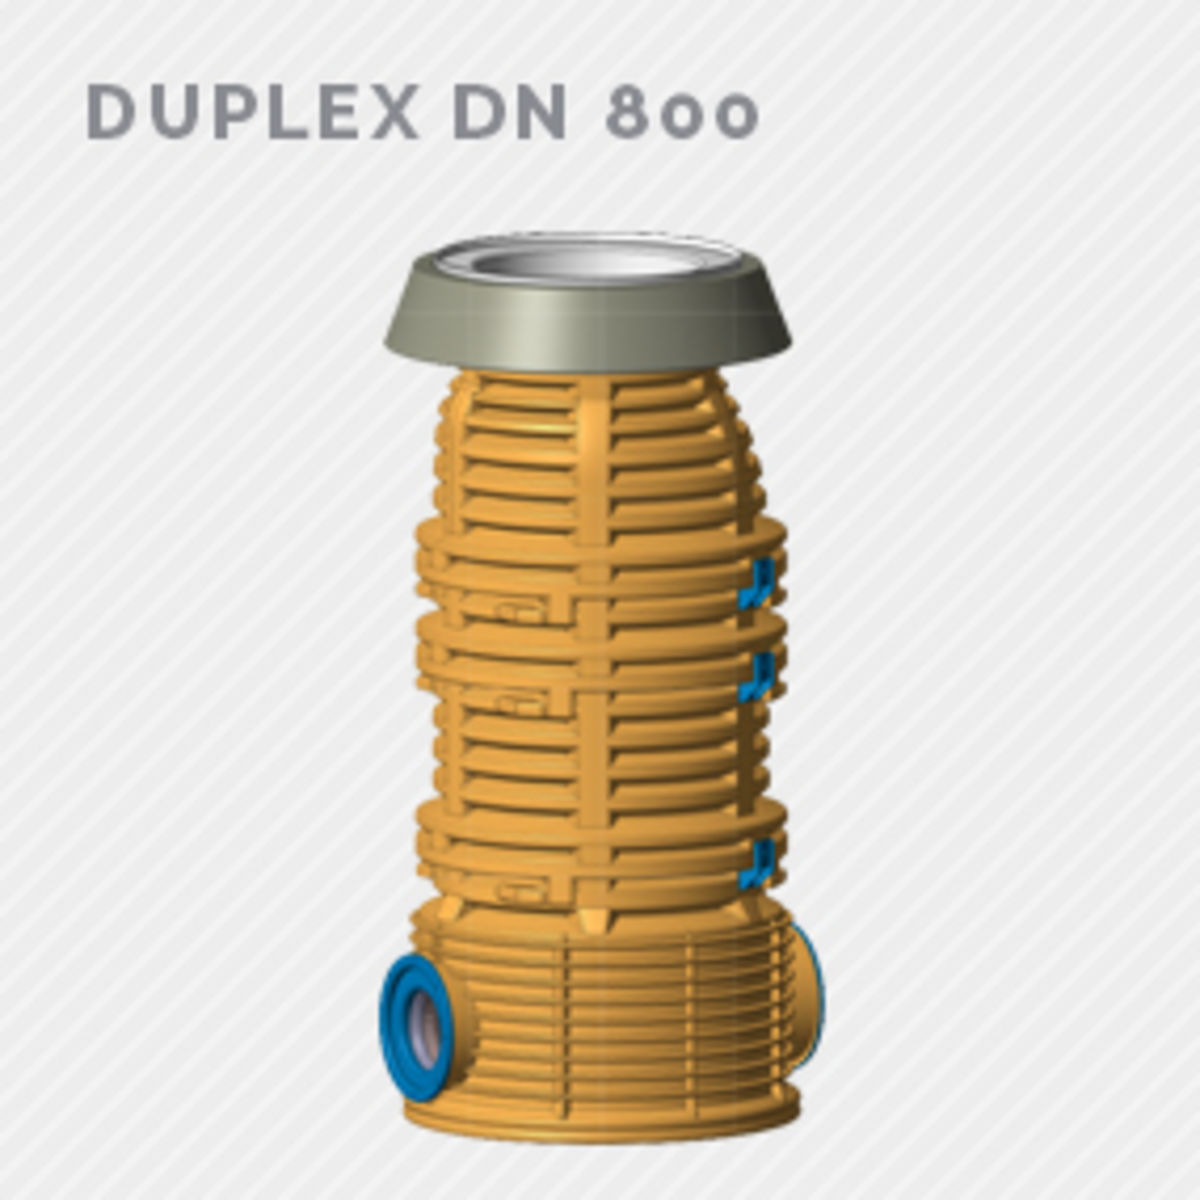 Duplex DN800 CARTELLA DI PRODOTTO